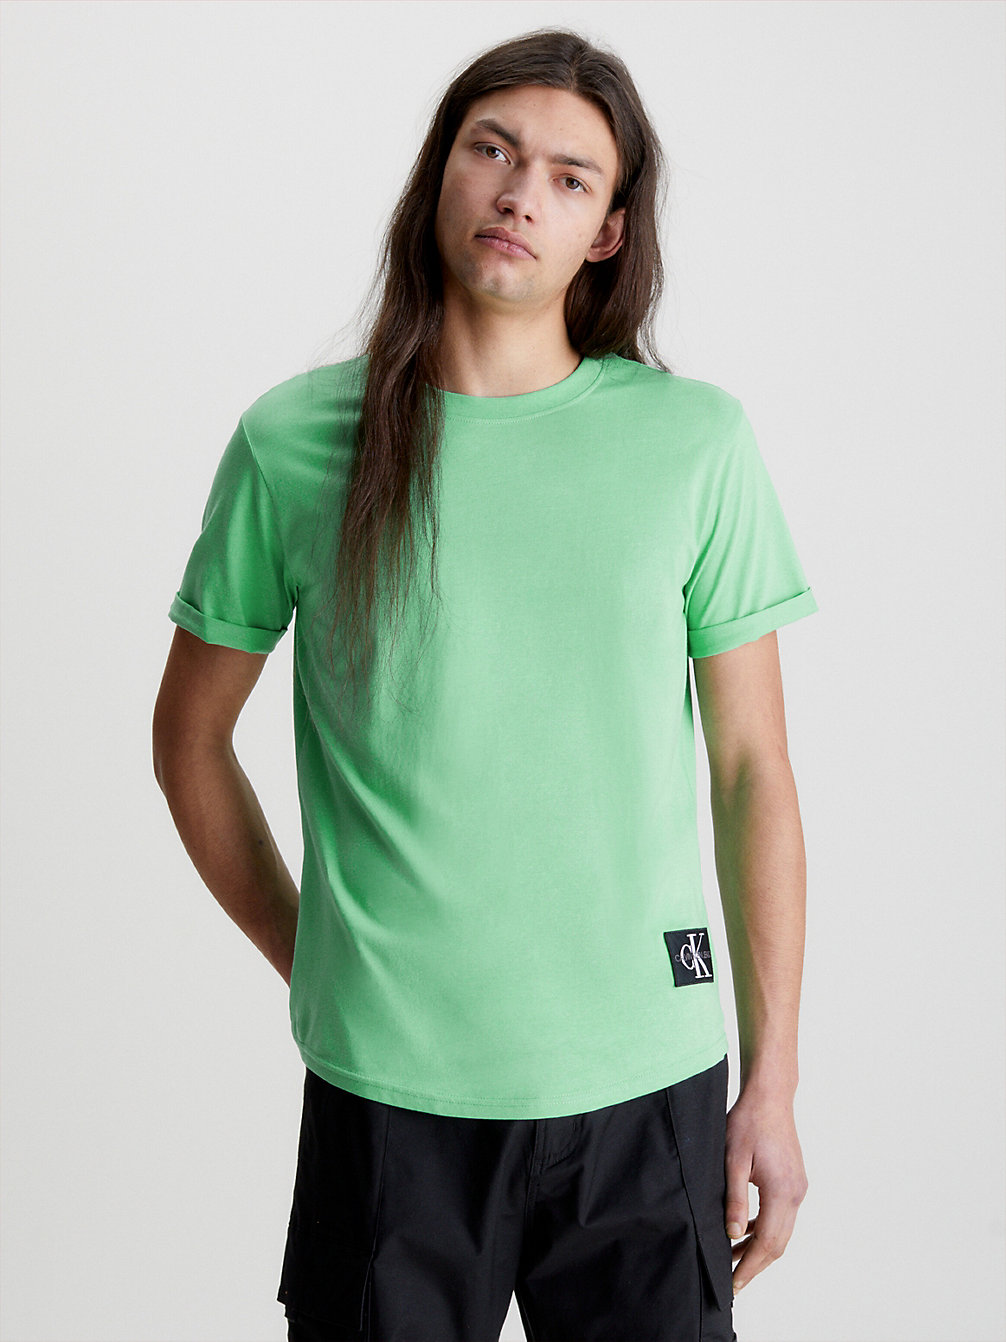 NEPTUNES WAVE T-Shirt En Coton Bio Avec Insigne undefined hommes Calvin Klein